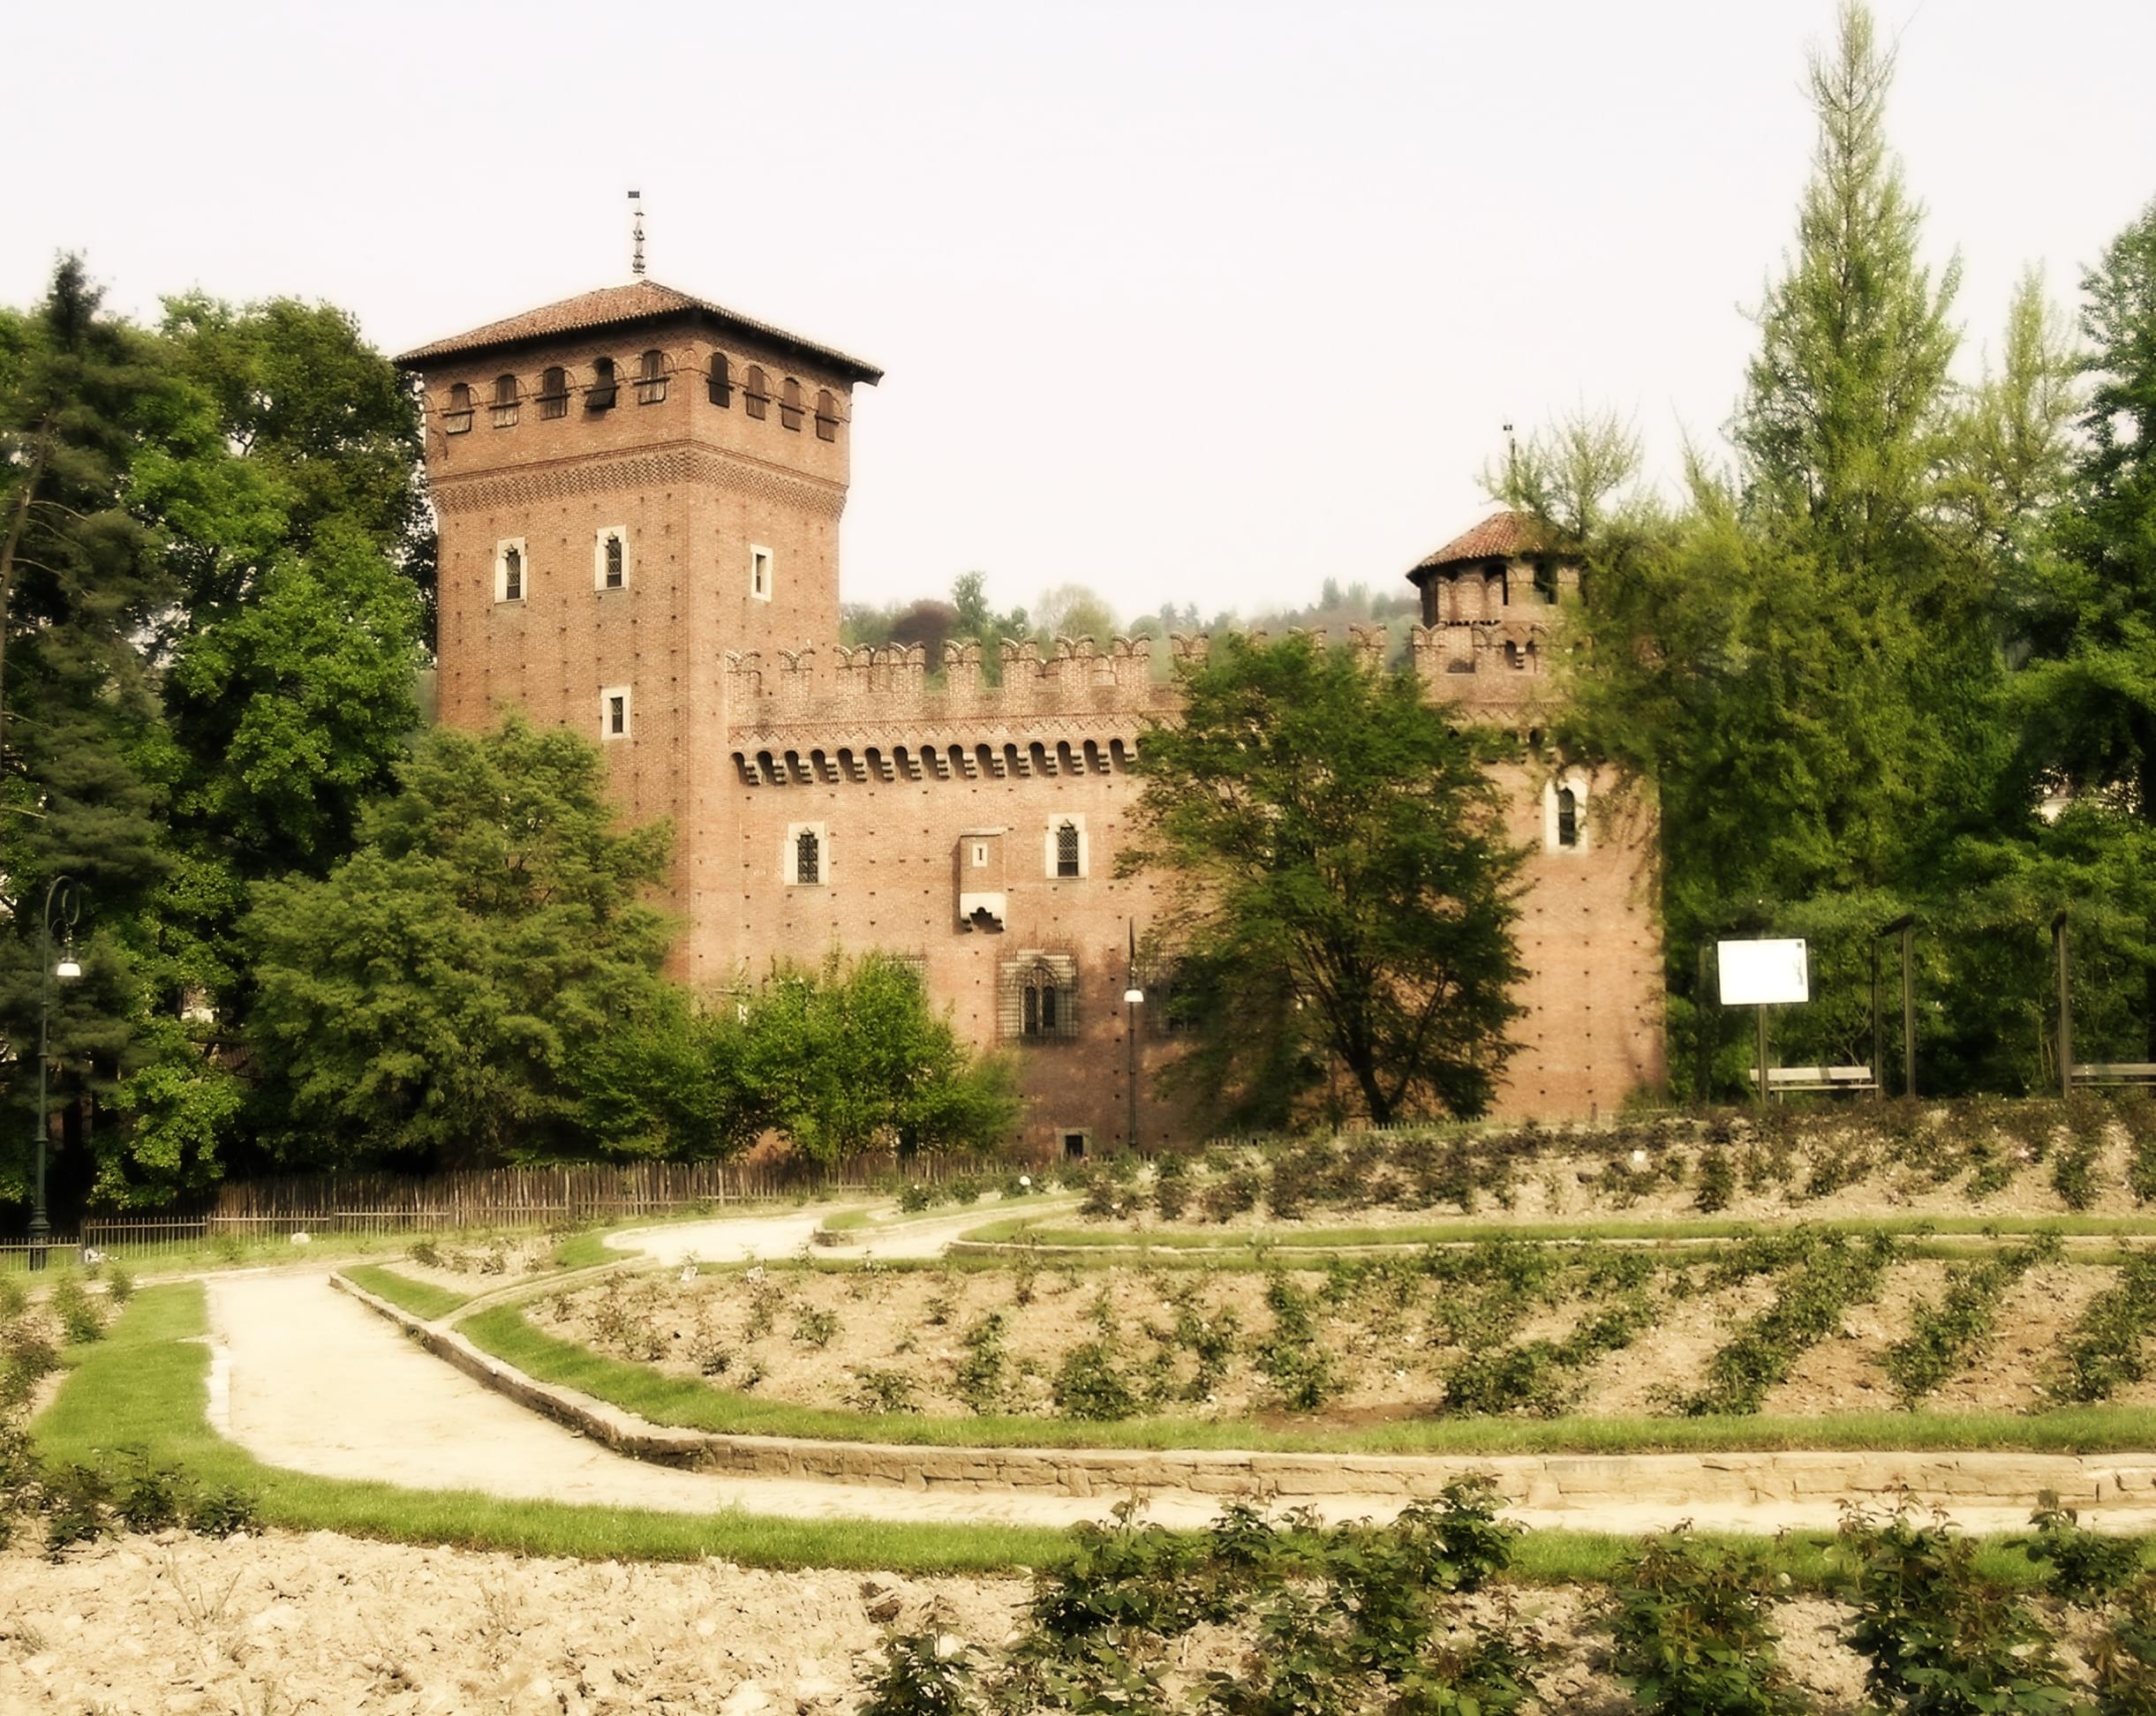 Borgo Medievale Overview